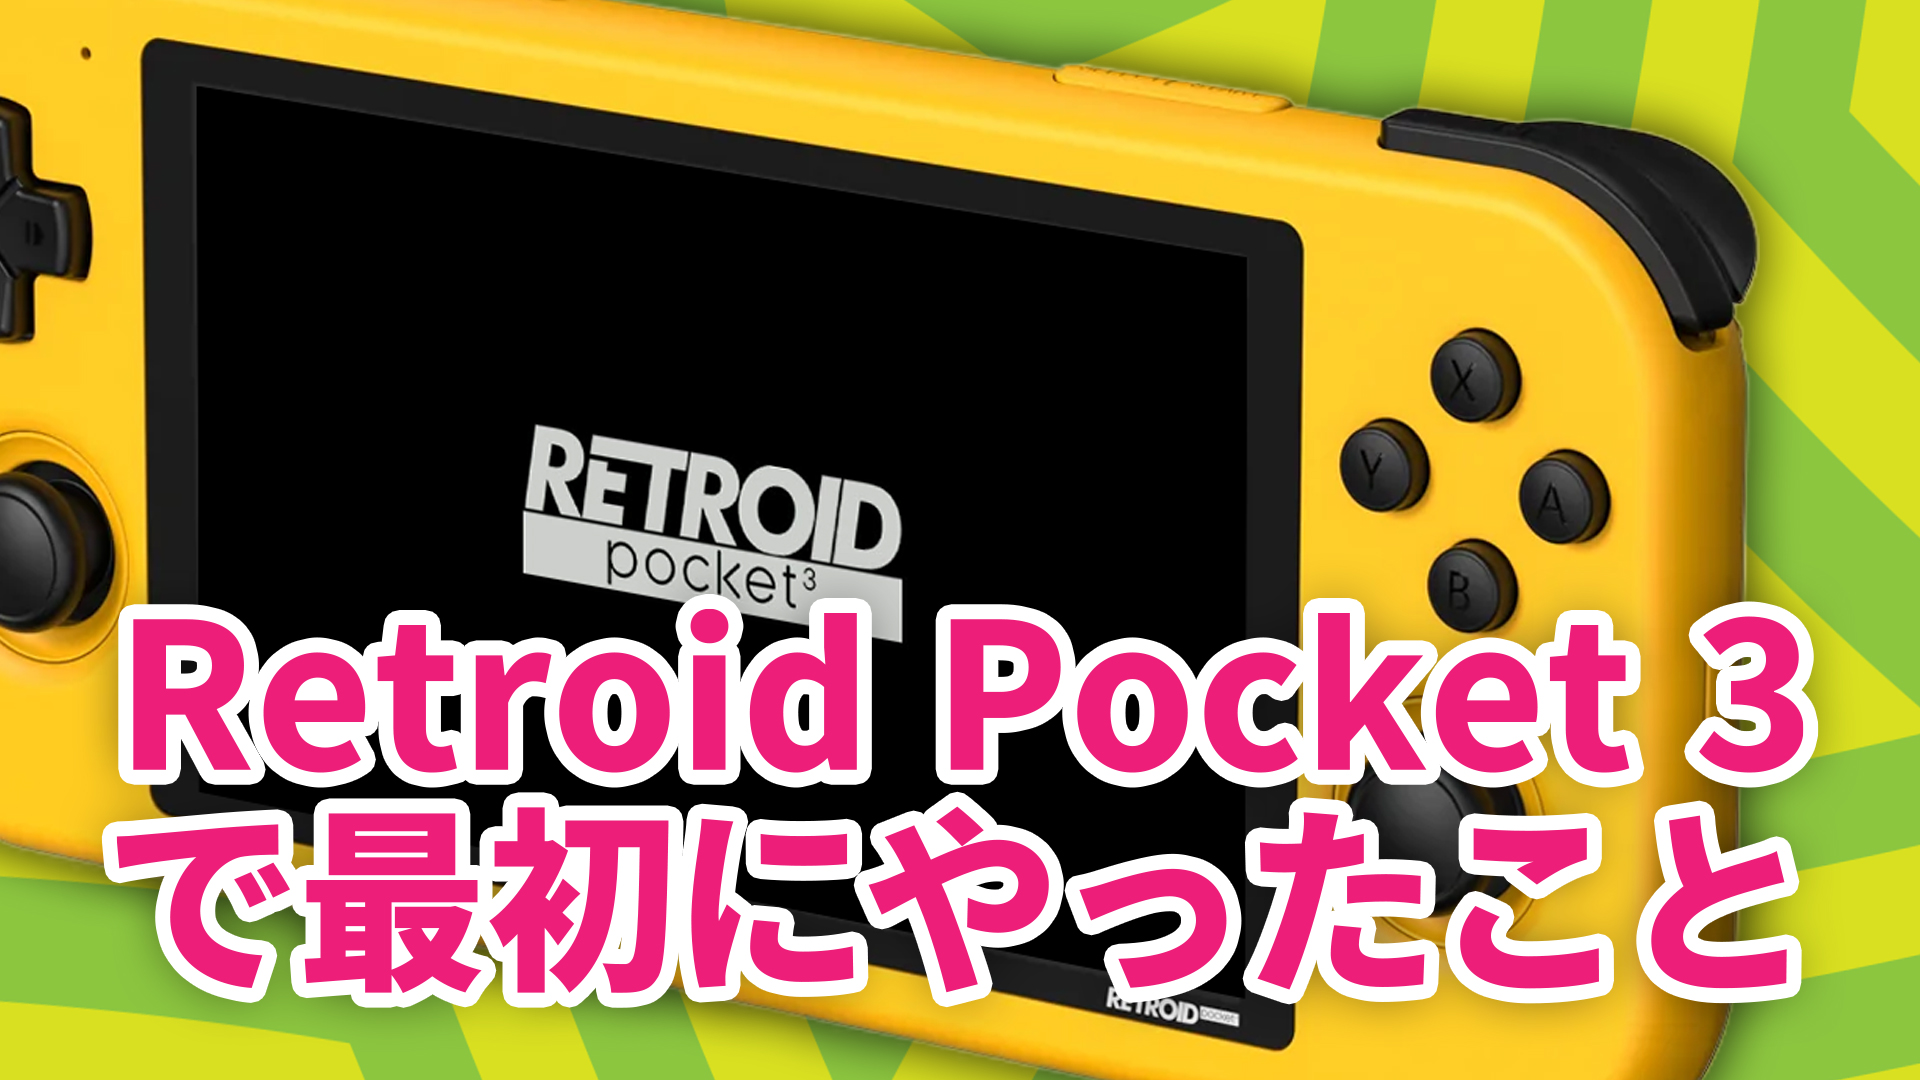 保護【24時間セール】Retroid Pocket 2s レトロイドポケット32+3 Nintendo Switch